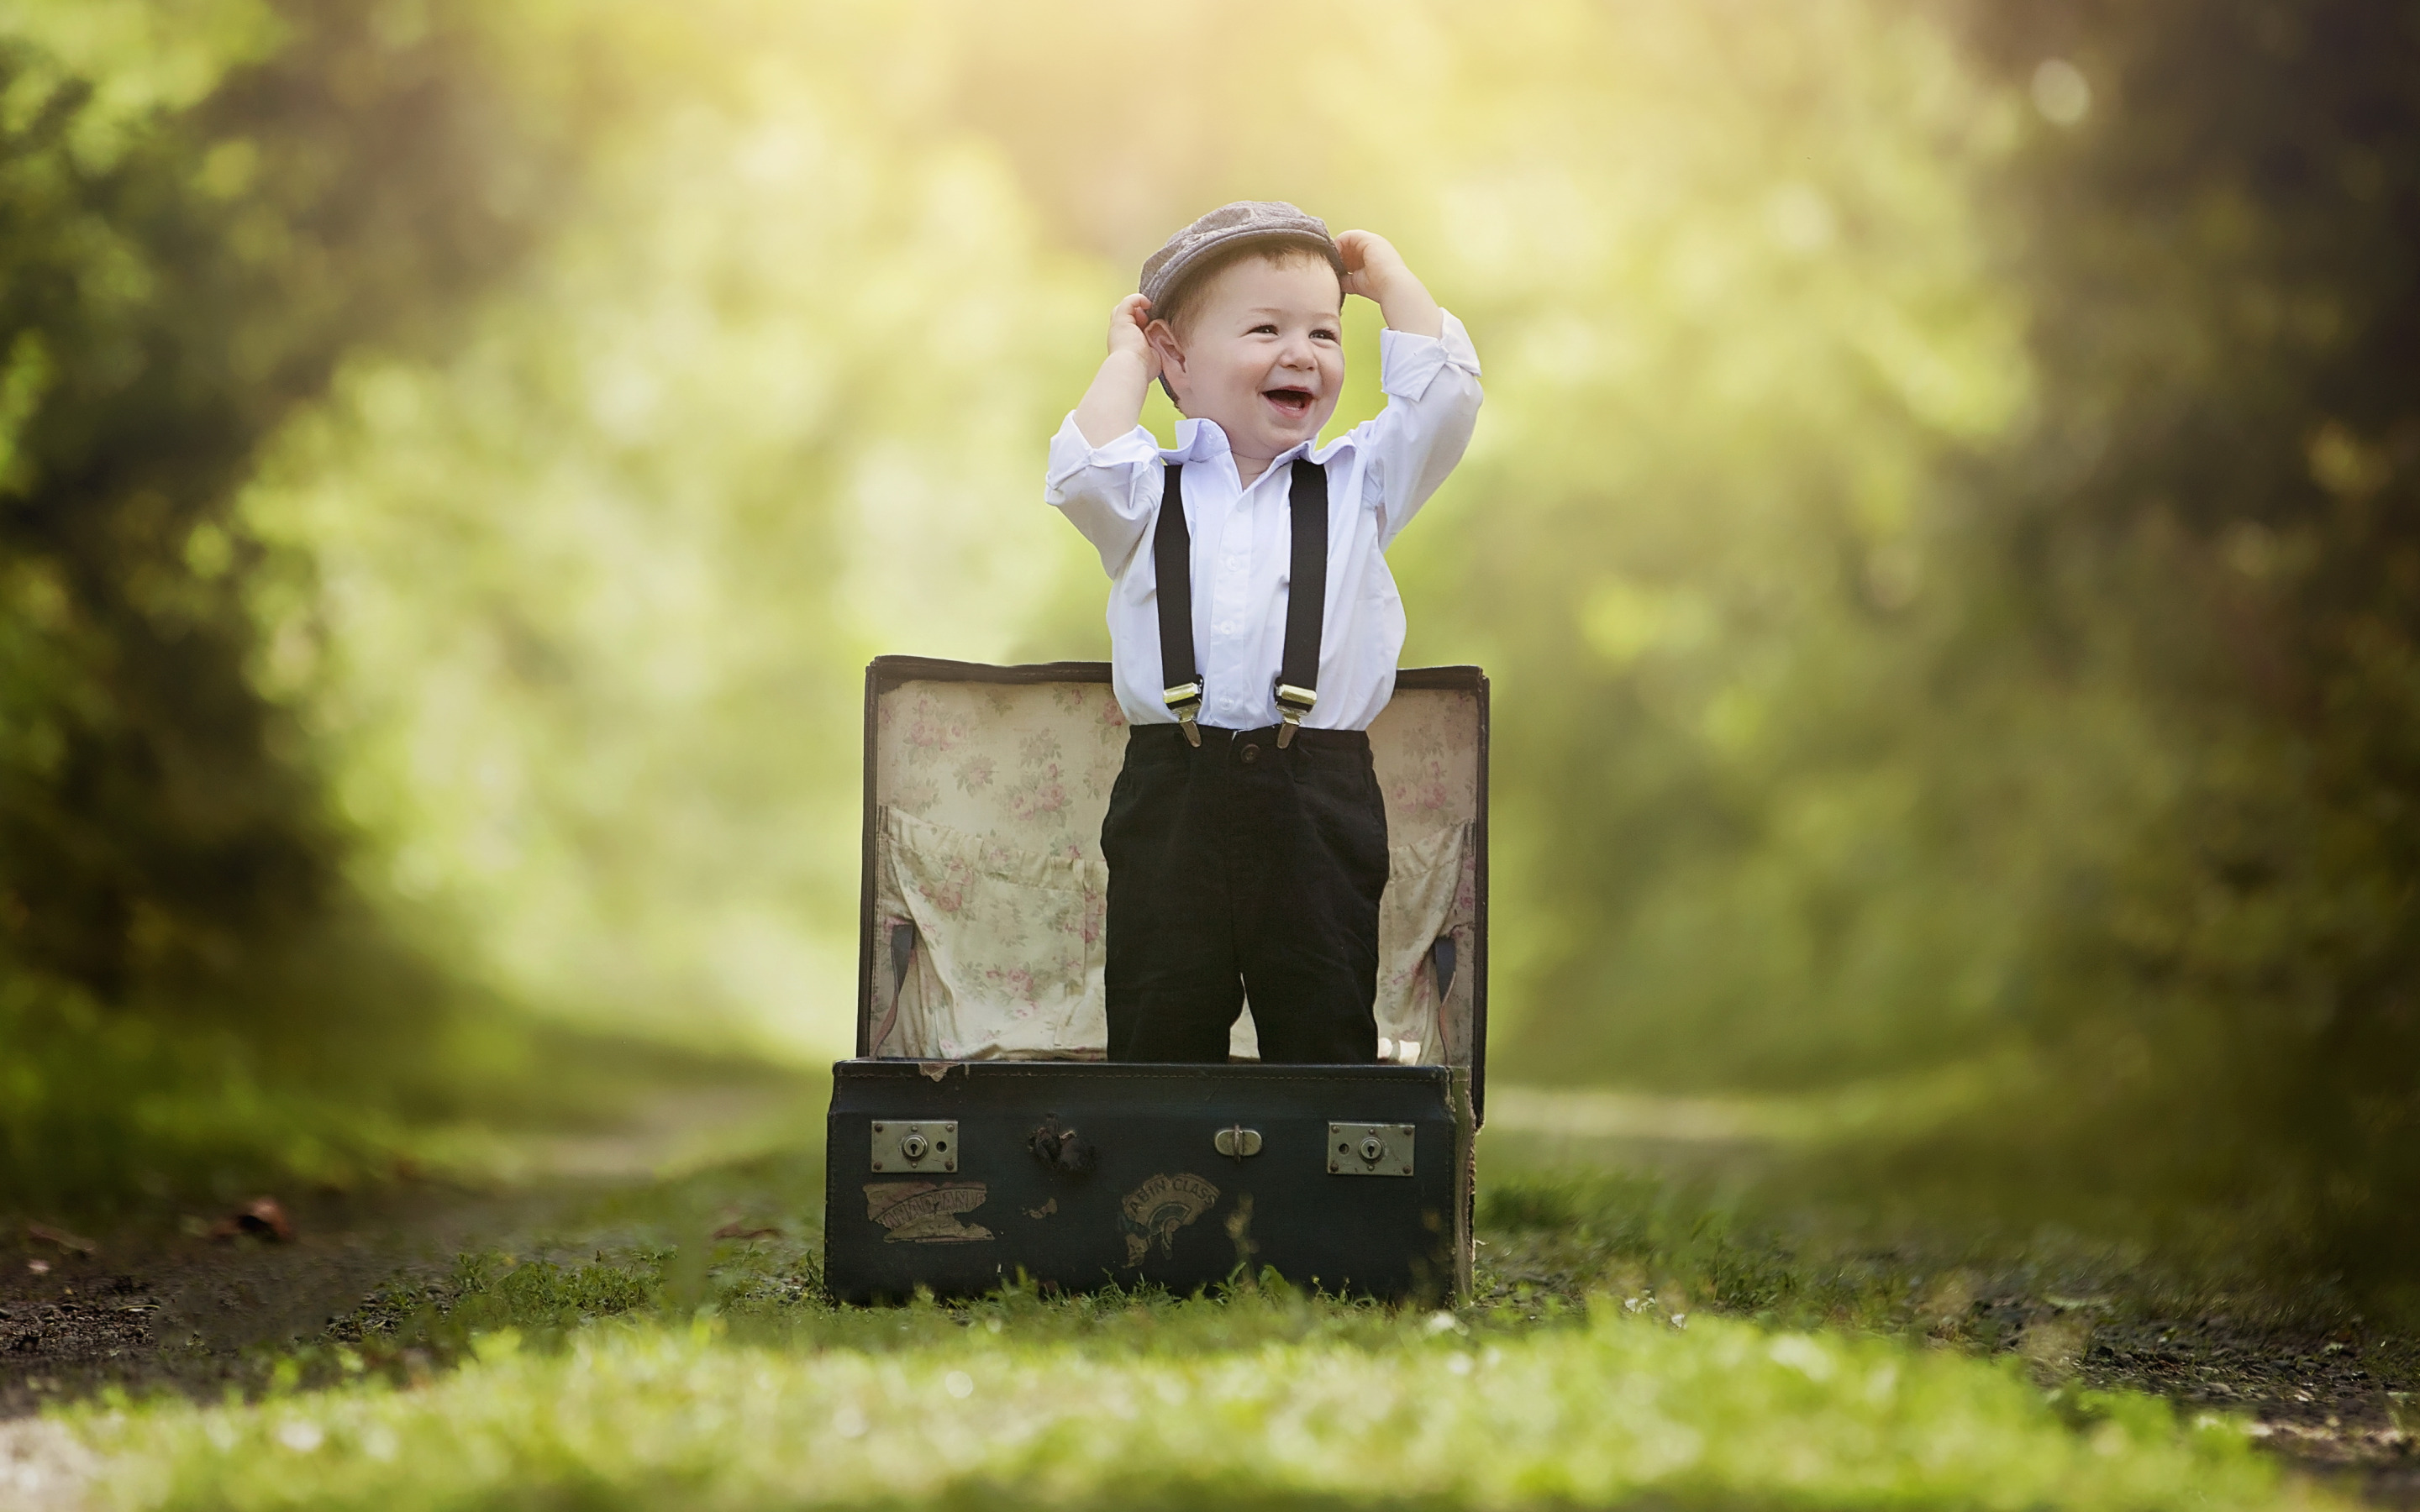 Свободен мальчик. Мальчик с чемоданом. Детская фотосессия с чемоданом. Чемодан для детей. Фотосессия для мальчика.